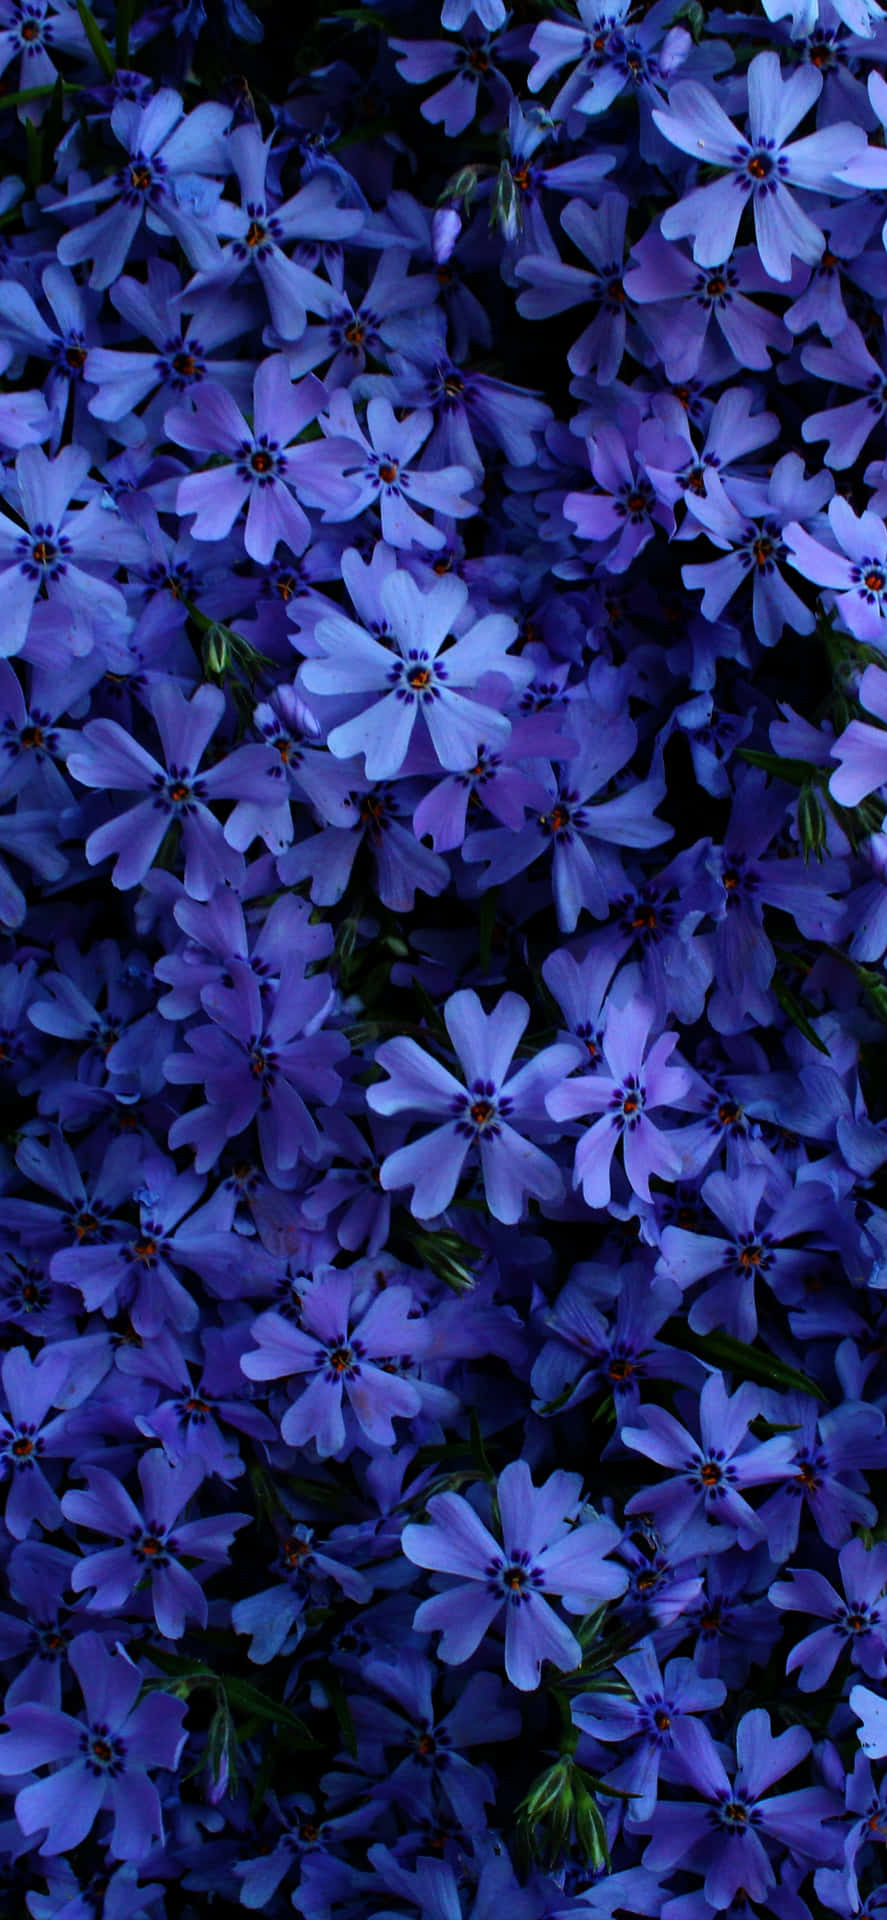 Imagende Flores En Tonos Oscuros Morados Y Azules